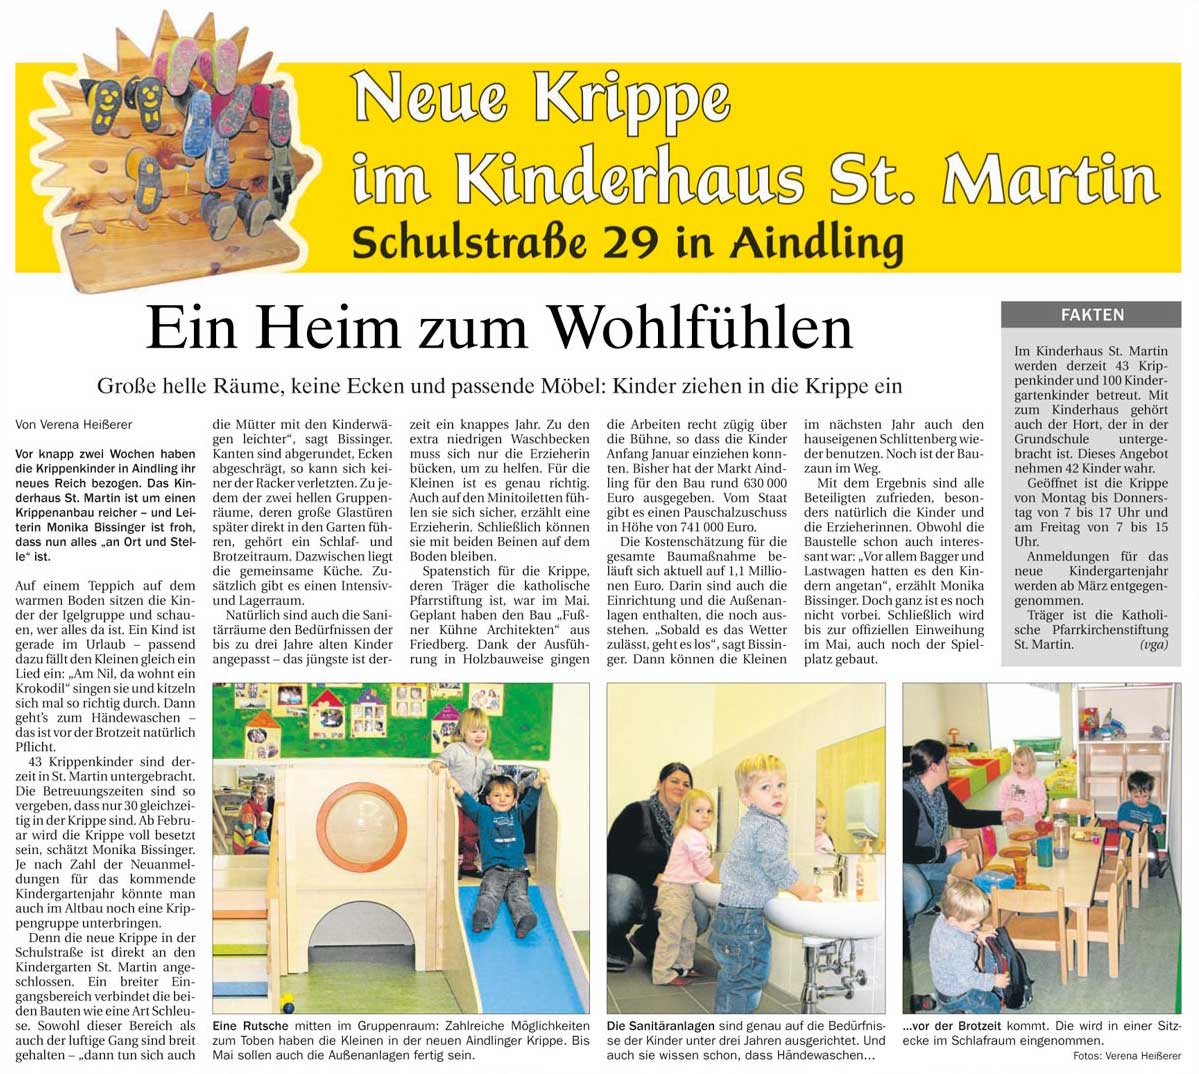 Fußner Kühne Architekten 2012 - Presseartikel aus der Aichacher Zeitung: Ein Heim zum Wohlfühlen (Erweiterung der Kinderkrippe Aindling)